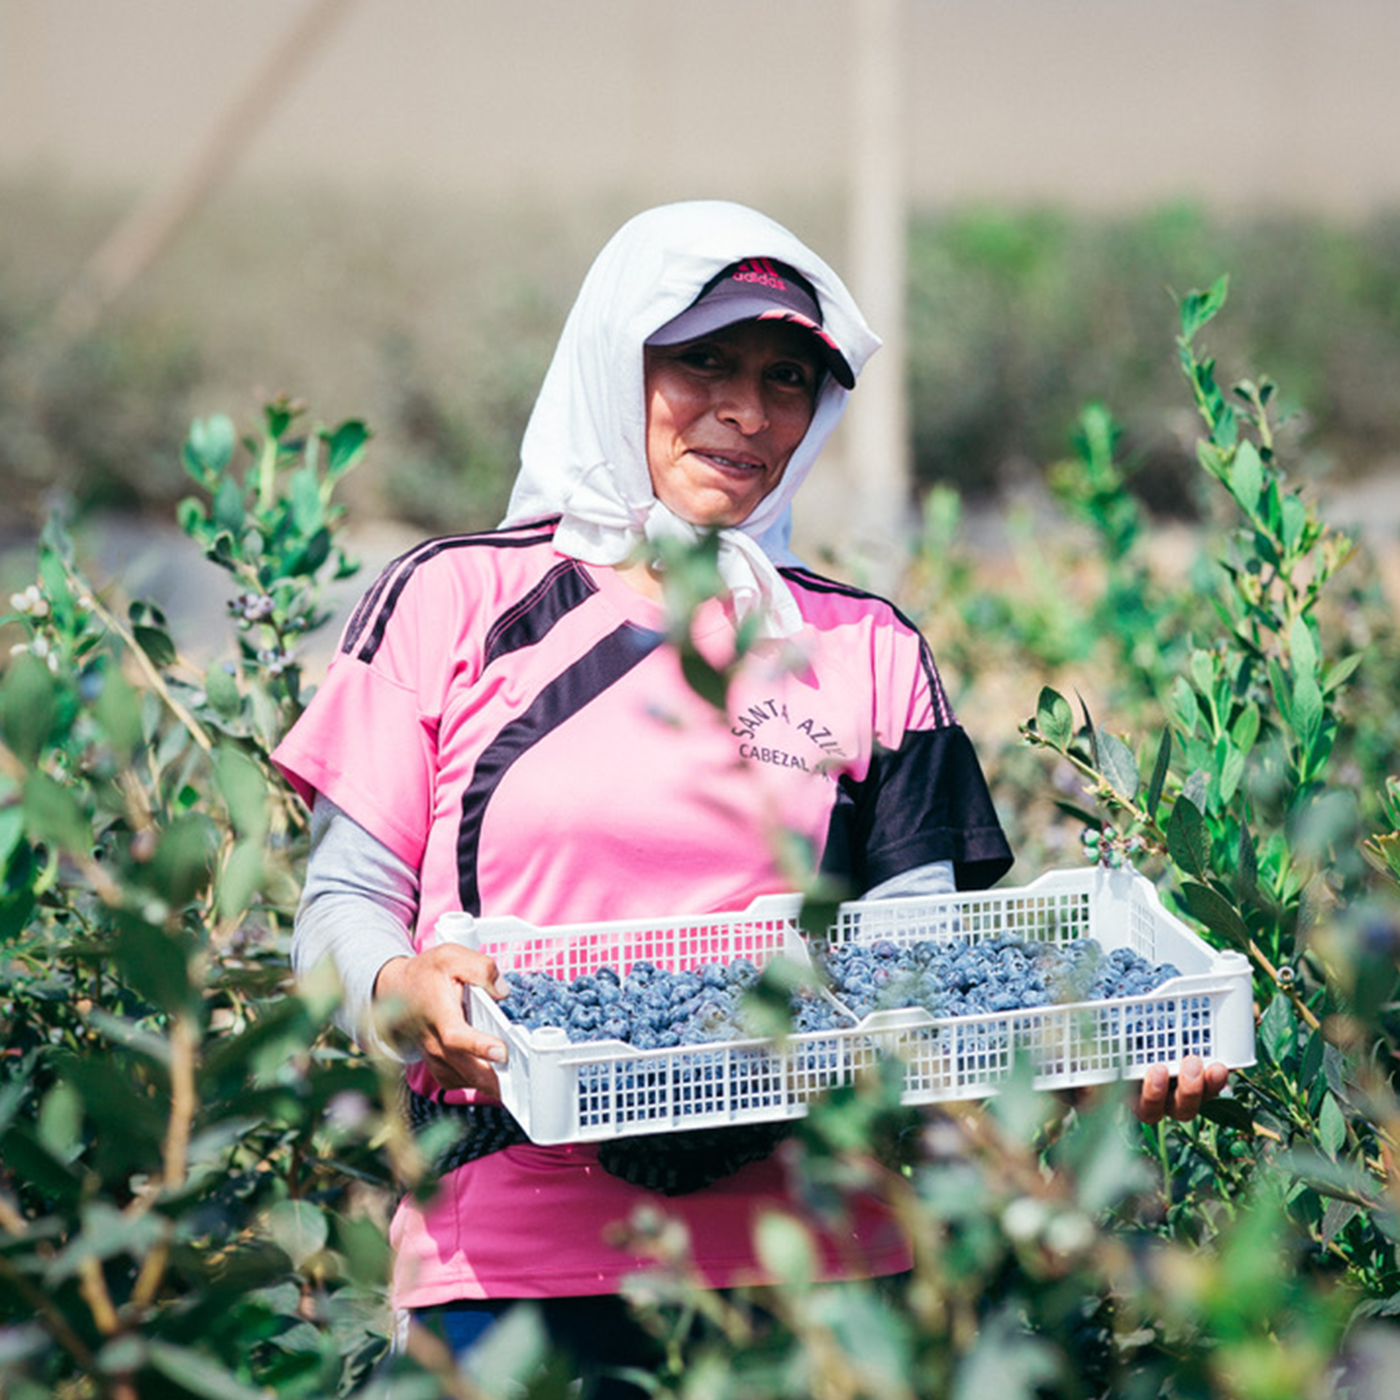 Image of farmer harvesting blueberries